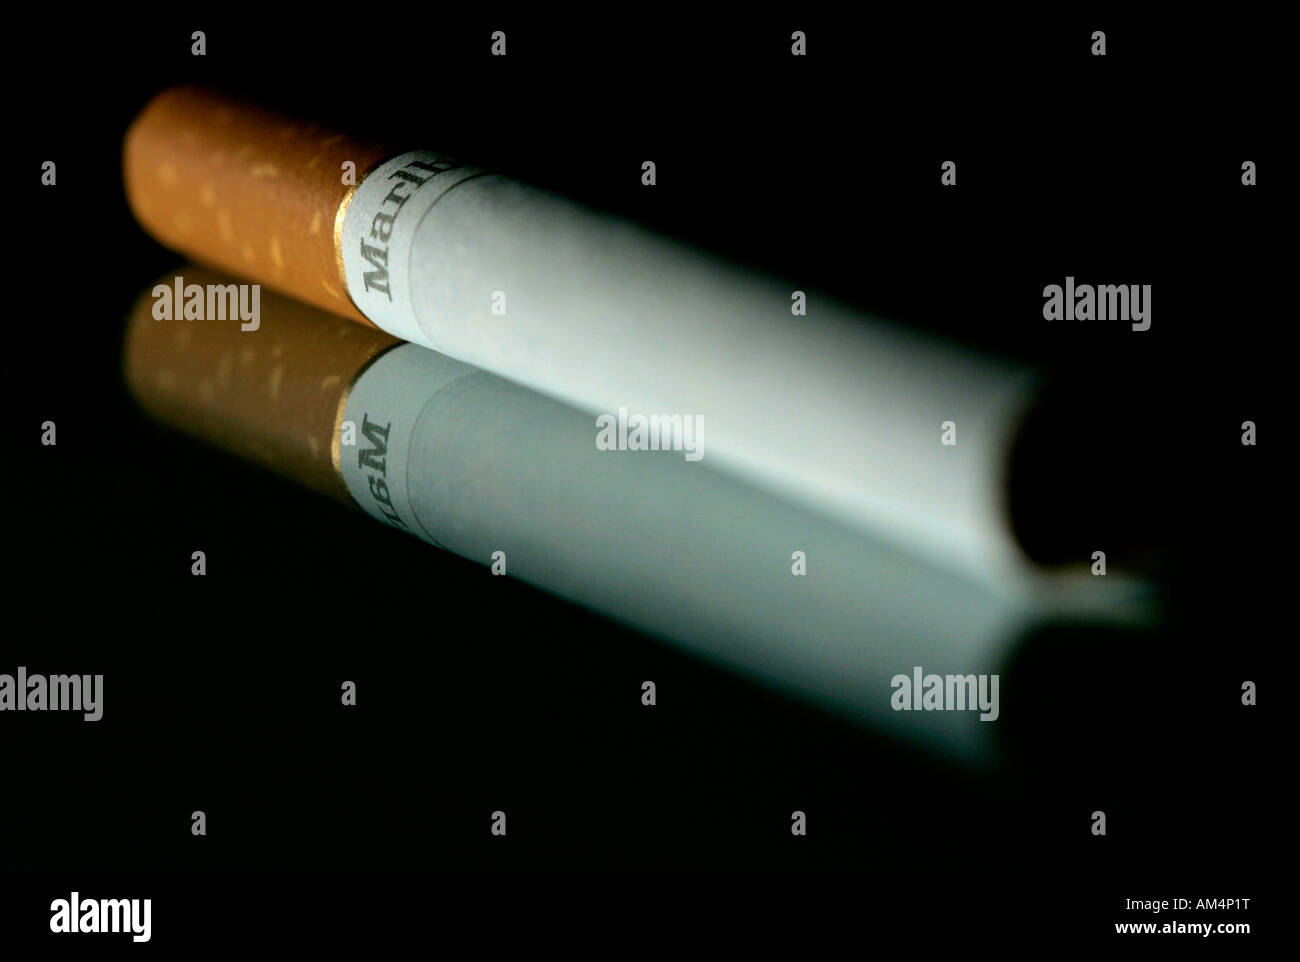 A Marlboro cigarette Stock Photo